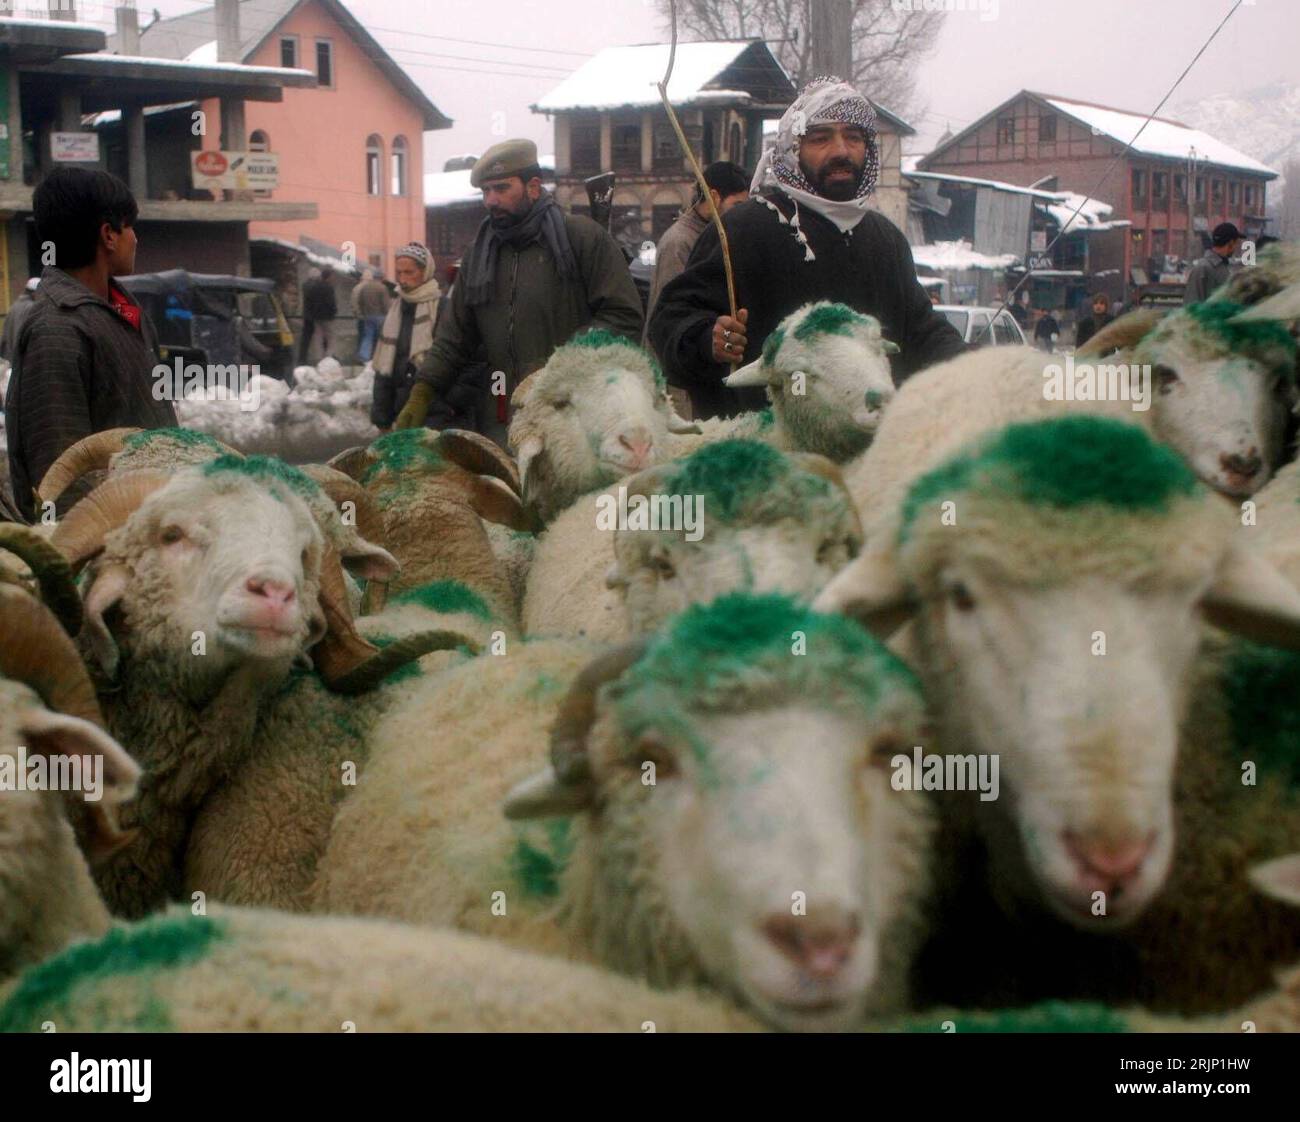 Bildnummer: 51050869  Datum: 07.01.2006  Copyright: imago/Xinhua Einheimischer Schafhirte treibt seine mit Farbe markierte Herde nach Srinagar  - Kashmir - PUBLICATIONxNOTxINxCHN, Personen , Tiere; 2006, Kashmir, Kaschmir, Srinagar, Schaf, Schafe, Herde, Herden, Schafherde, Schafherden, Hirte, Hirten, Schafhirte, Schafhirten, Nutztiere, Säugetiere, markiert, markiertes, Mann, Männer, Eid, Einheimische; , quer, Kbdig, Gruppenbild, Landwirtschaft, Wirtschaft, Indien / Nutztier Stock Photo